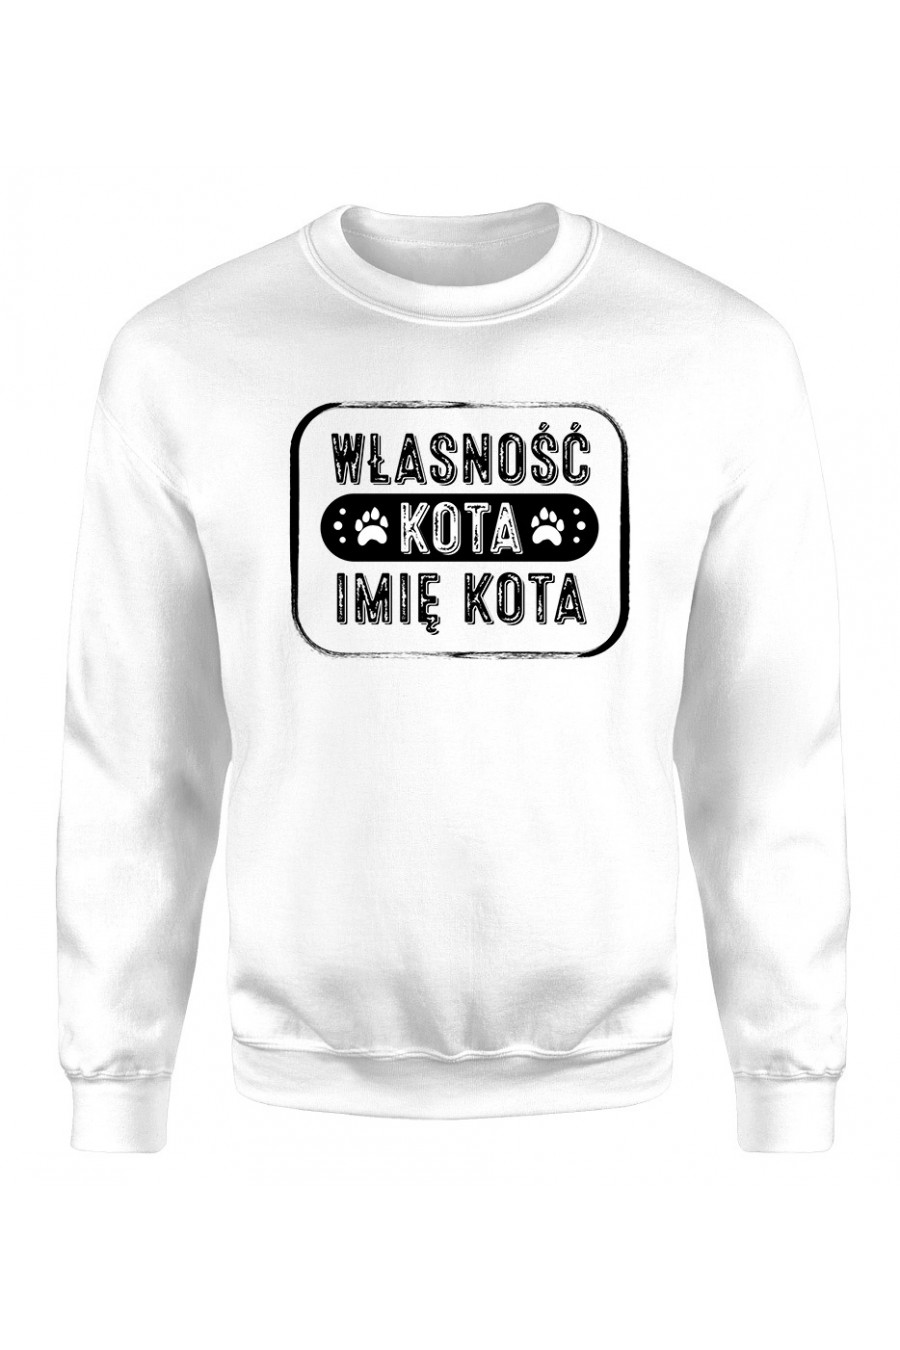 Bluza Klasyczna Damska Własność Twojego Kota Imię Kota